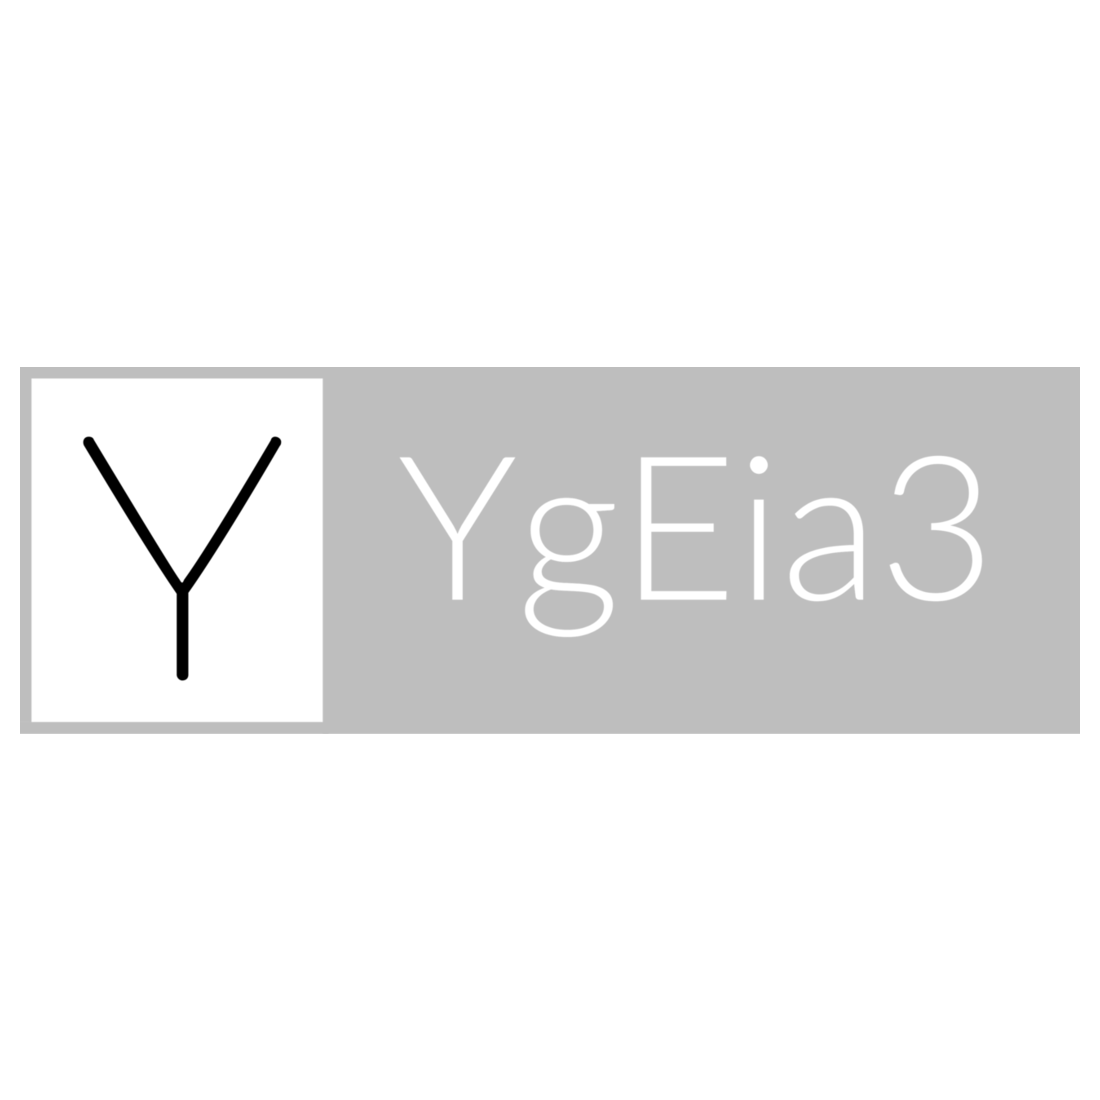 YgEia3 Logo